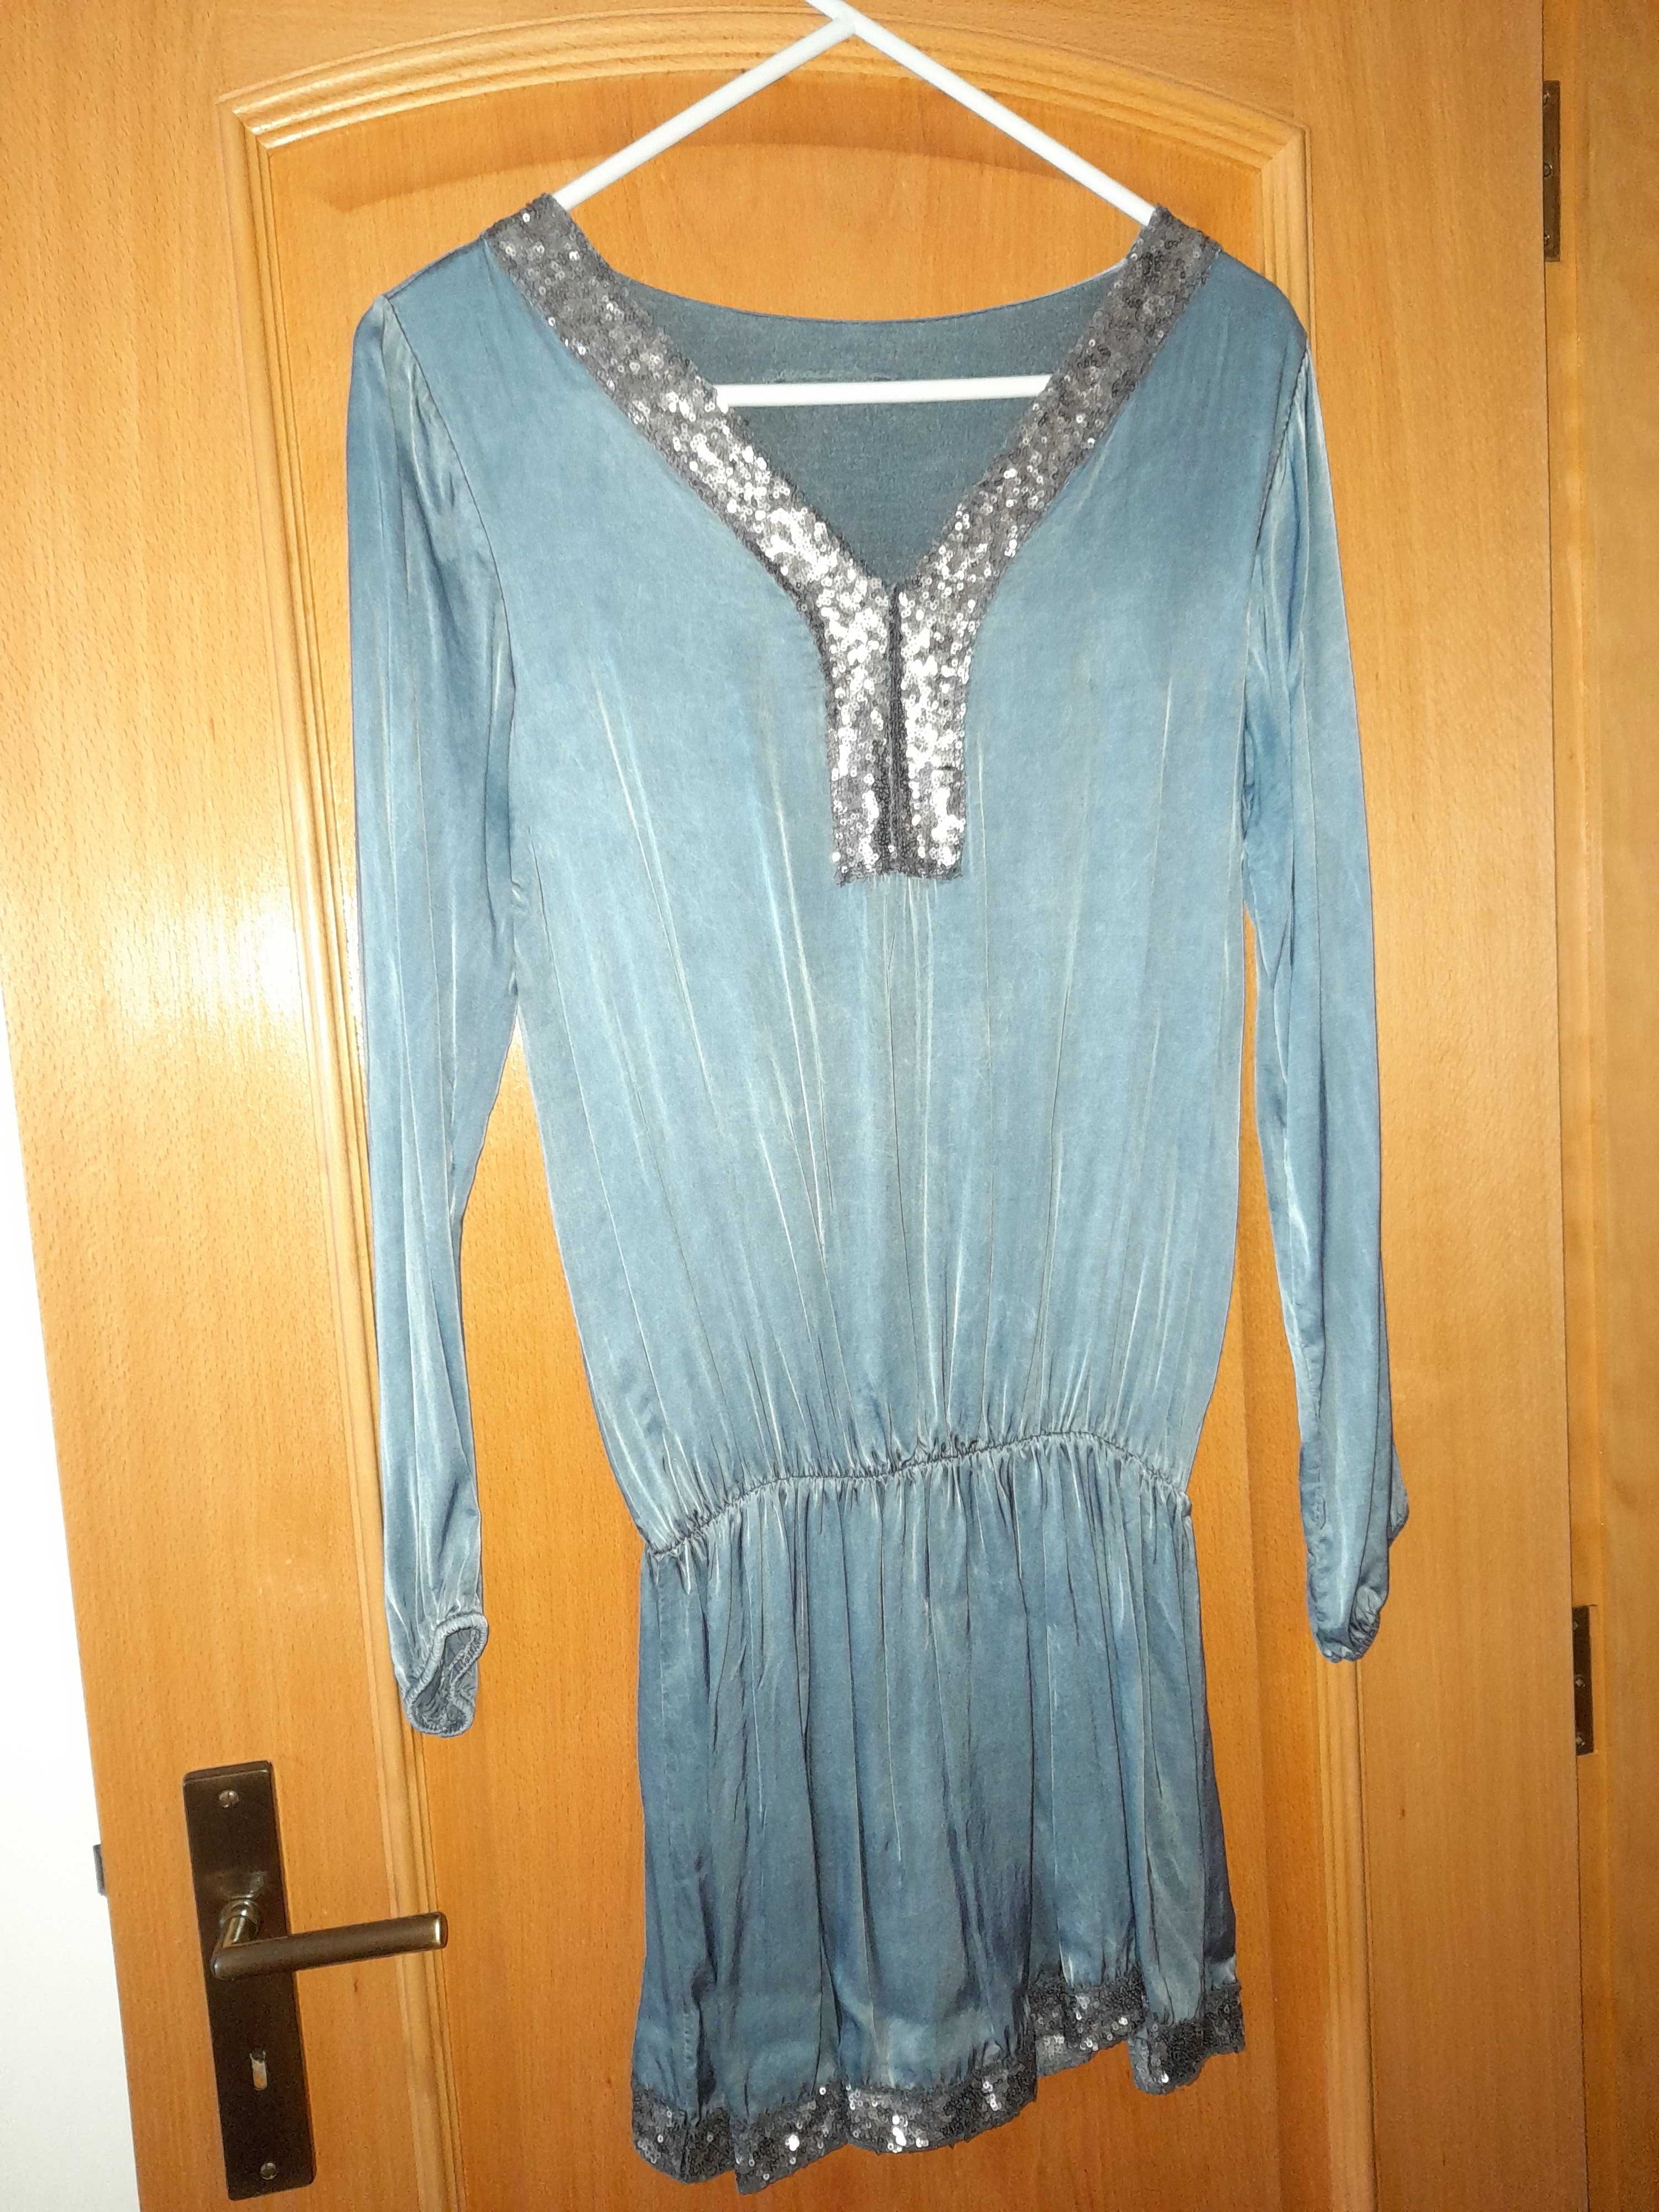 Vestido Azul com Lantejoulas, Tamanho Único, como novo